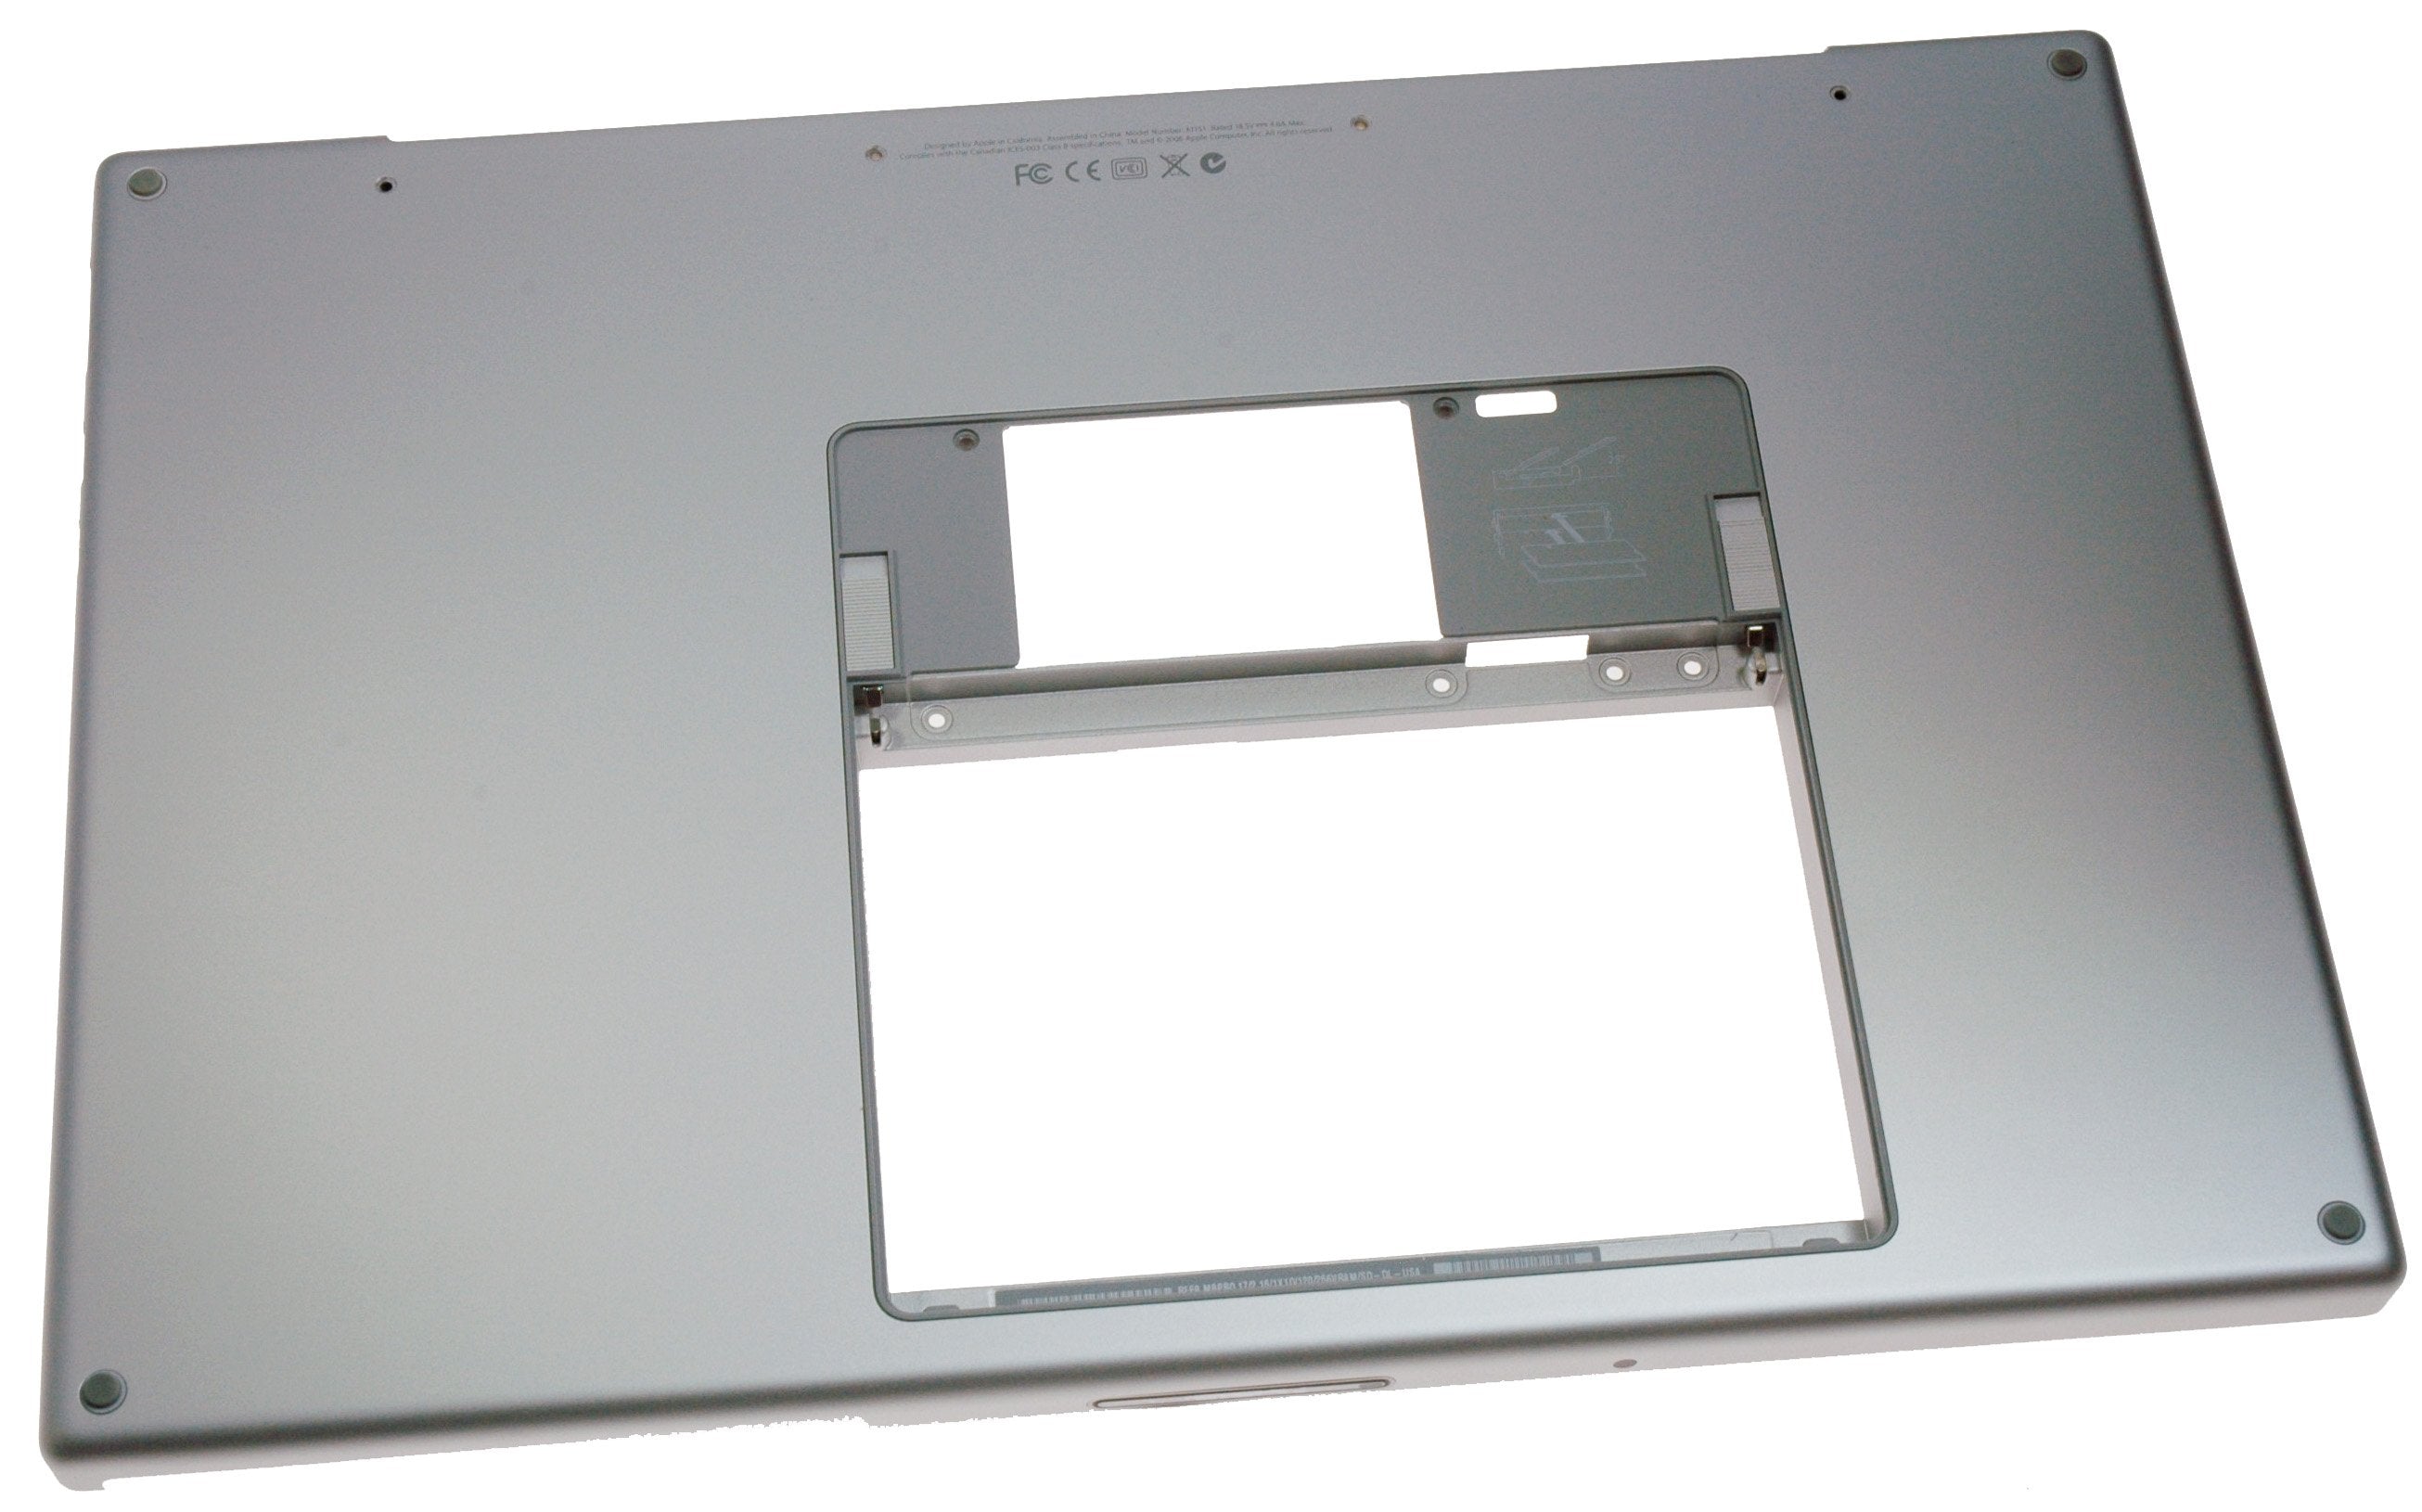 MacBook Pro 17" (Model A1151) Lower Case